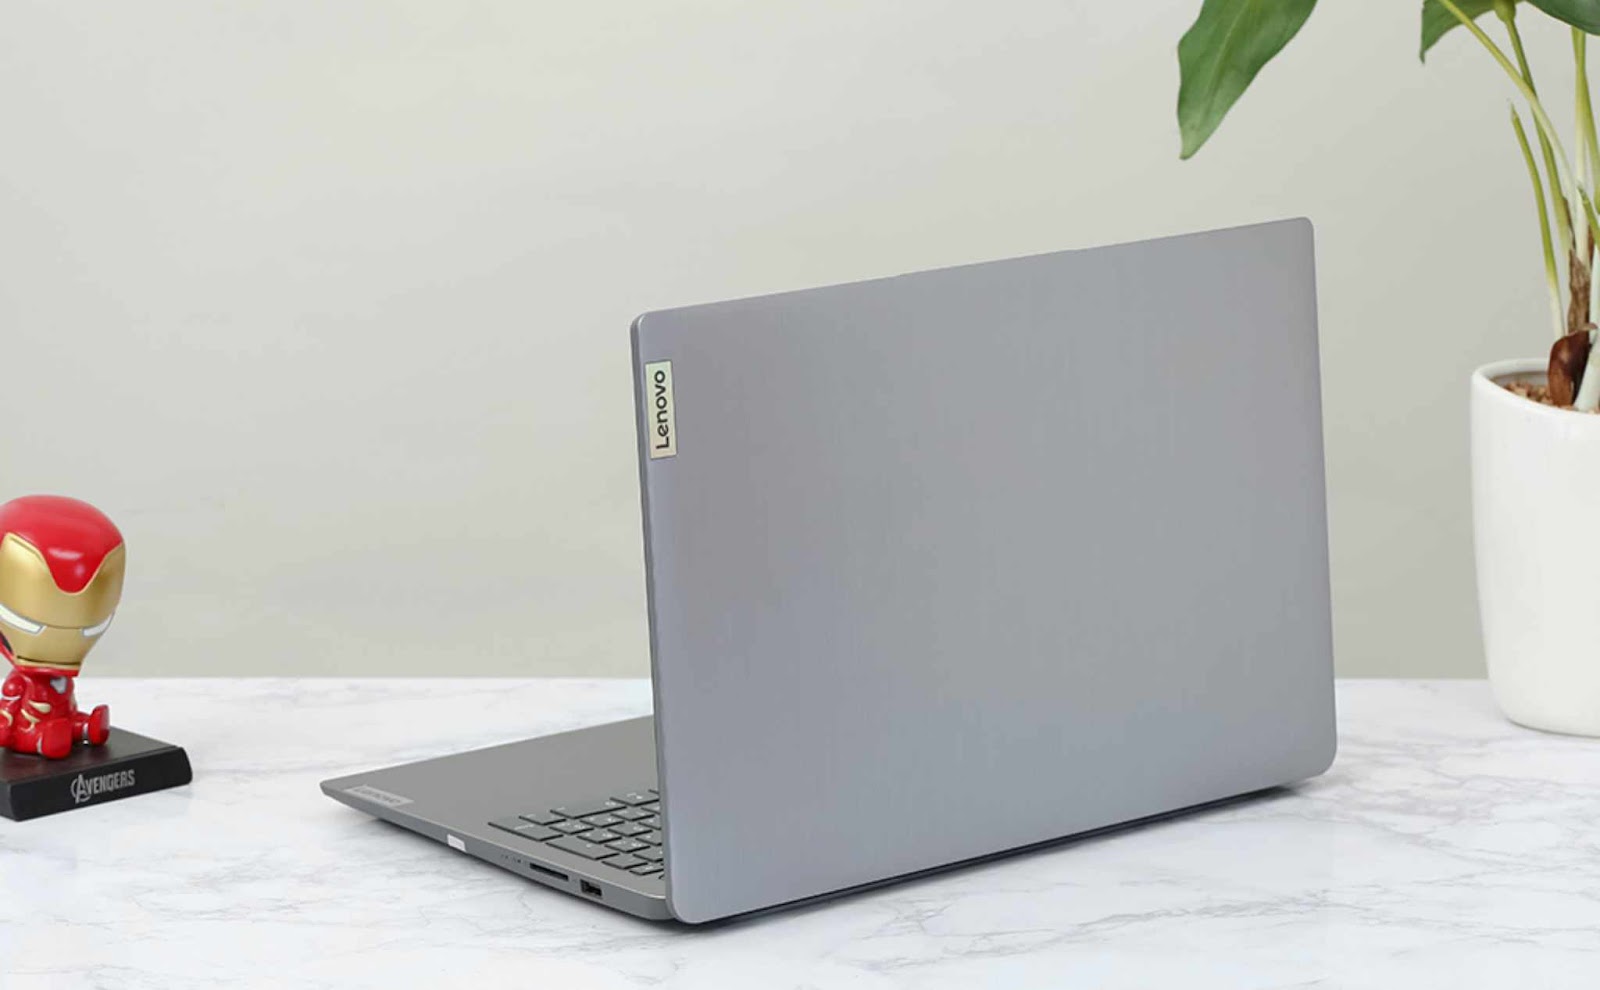 Danh sách 3 laptop core i3, i5, i7 giá rẻ bán chạy nhất tại Di Động Việt - 1